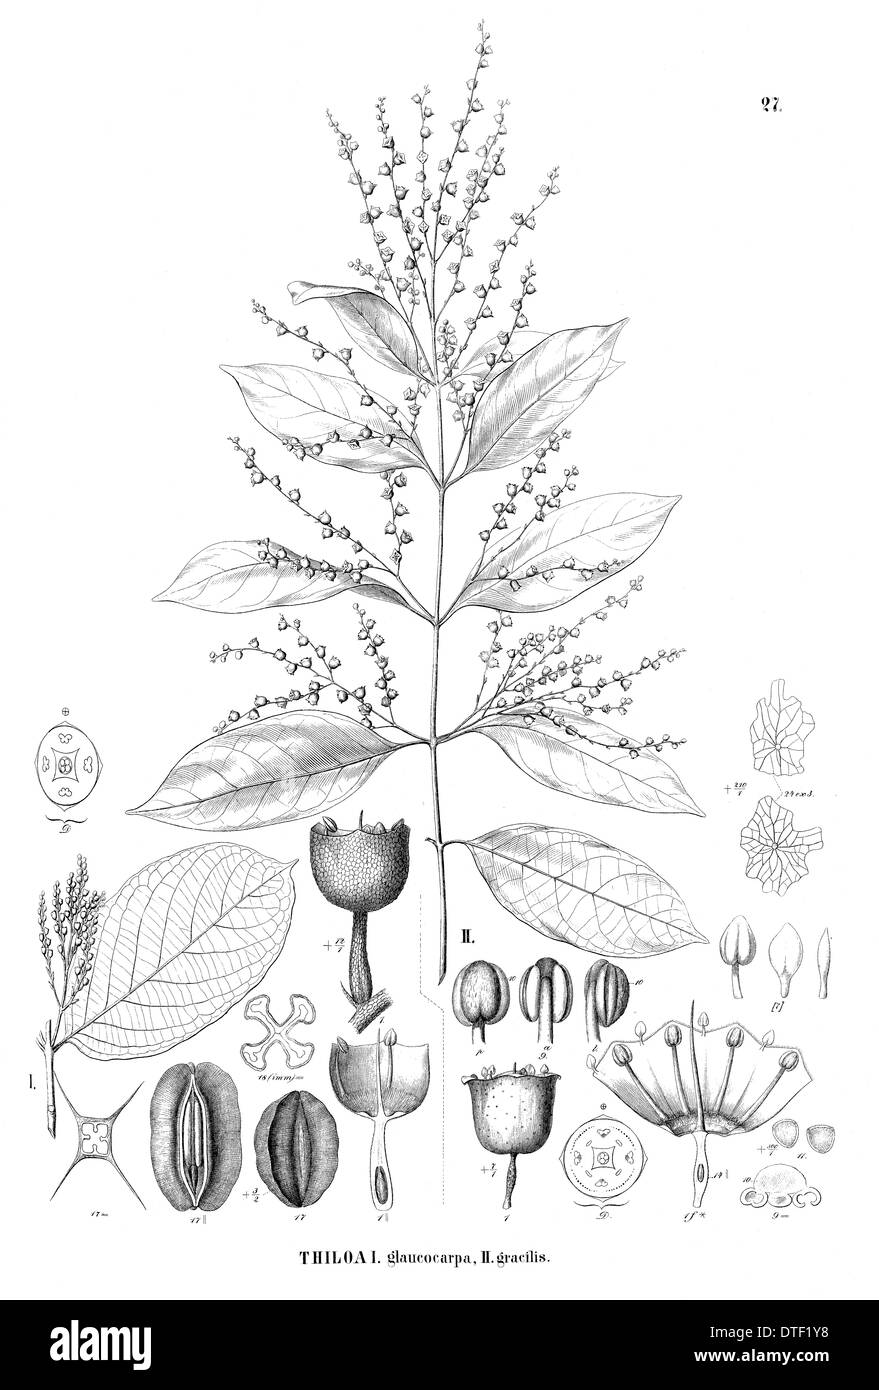 Thiloa glaucocarpa and Thiloa gracilis Stock Photo